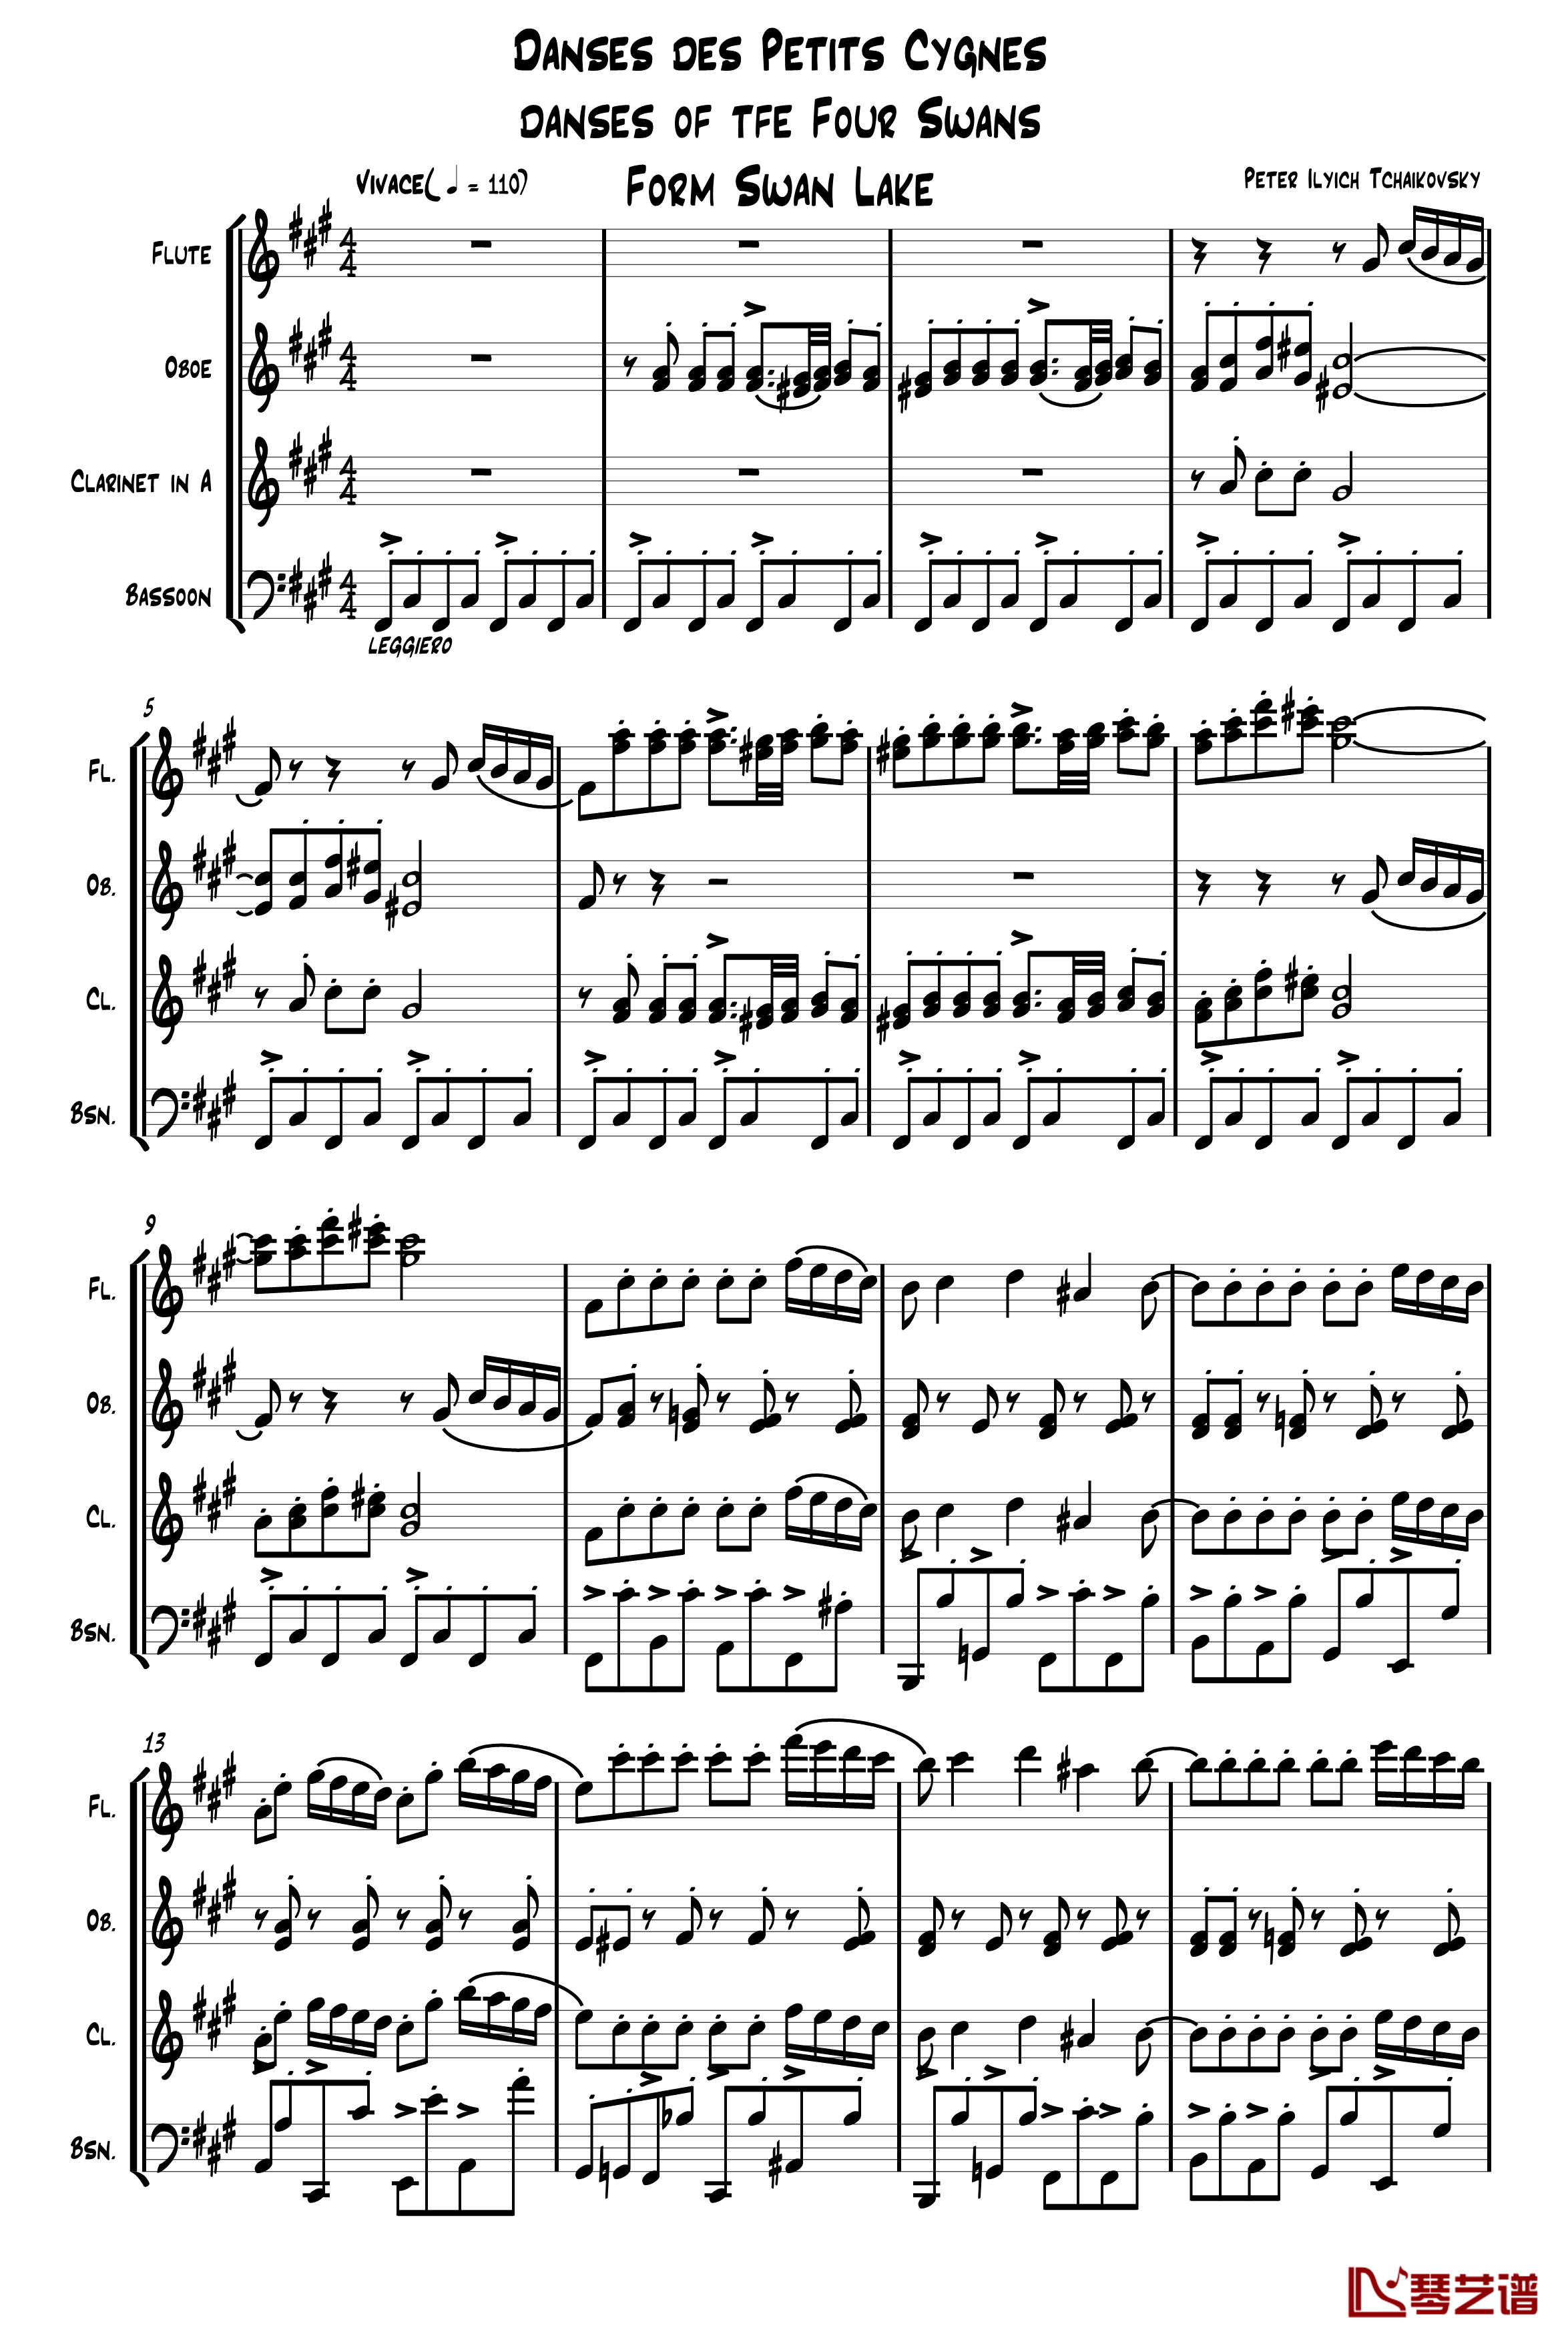 四小天鹅舞曲钢琴谱-柴科夫斯基-Peter Ilyich Tchaikovsky1